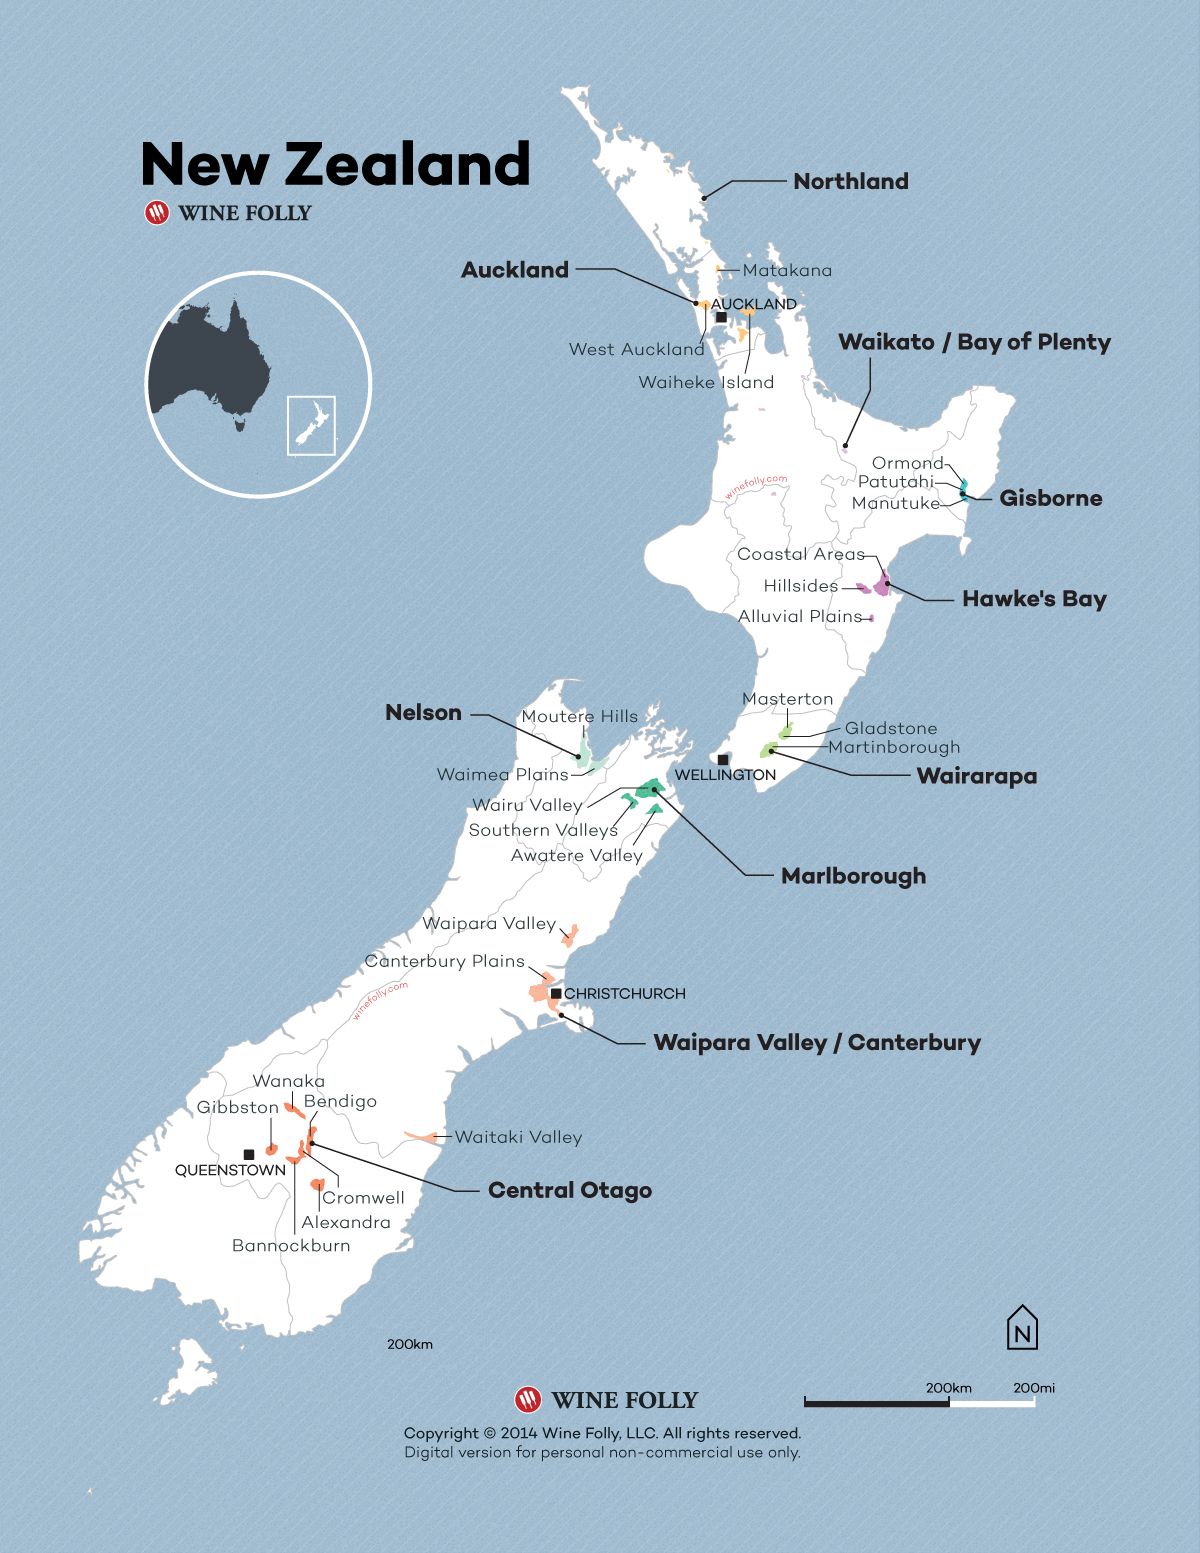 Naujosios Zelandijos vyno žemėlapis 2015, kurį sukūrė „Wine Folly“